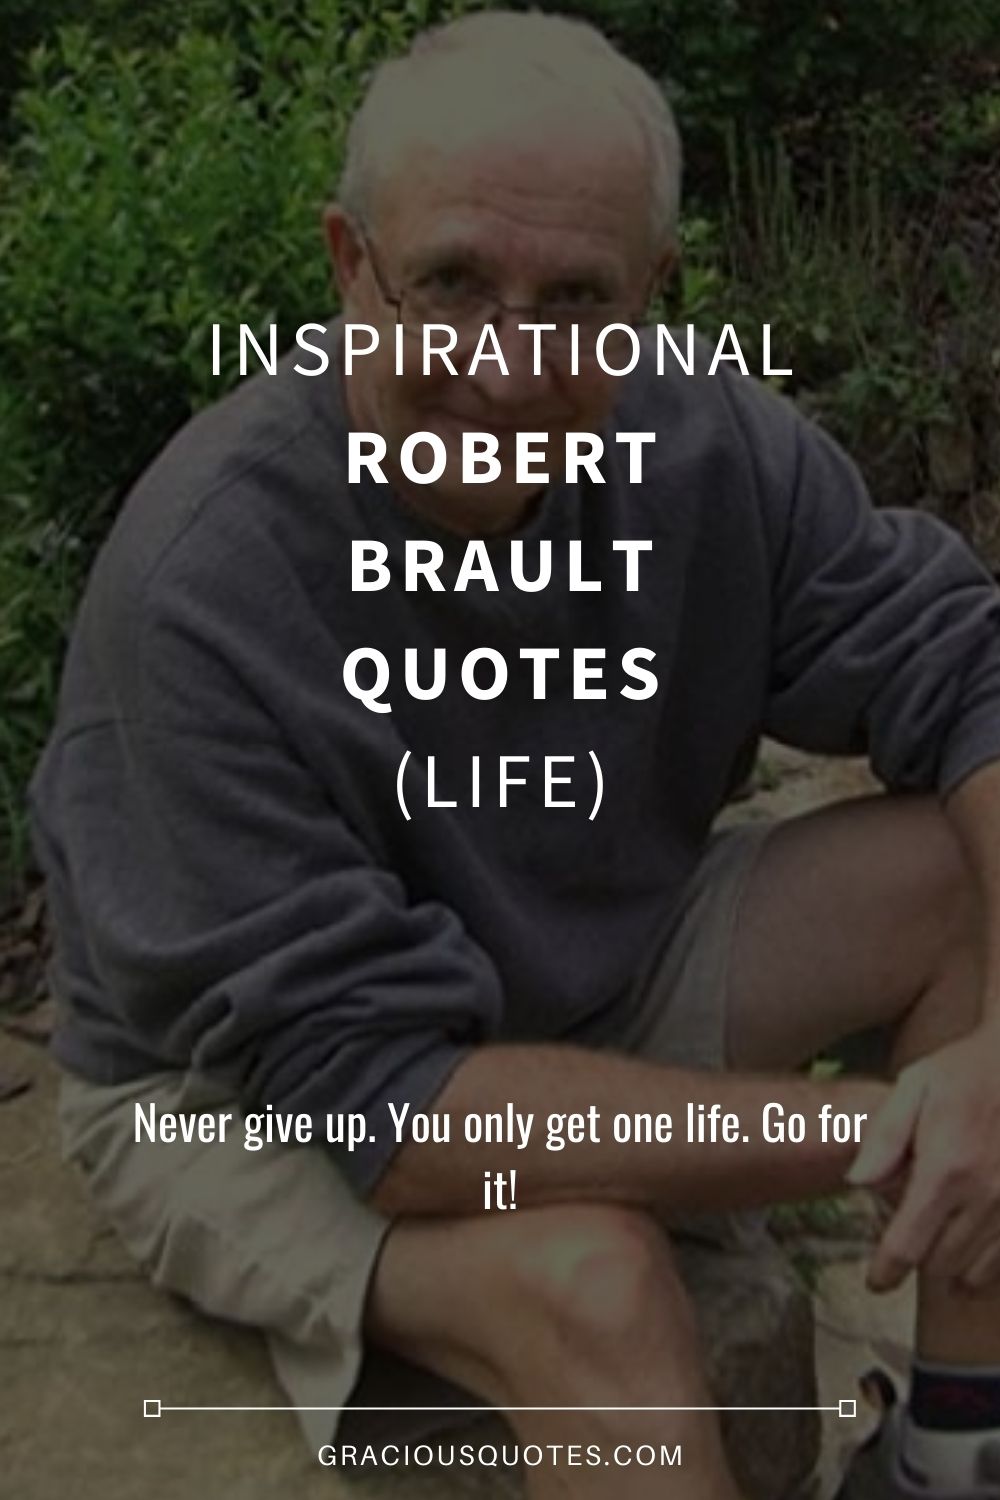 Inspirational Robert Brault Quotes (LIFE) - Gracious Quotes